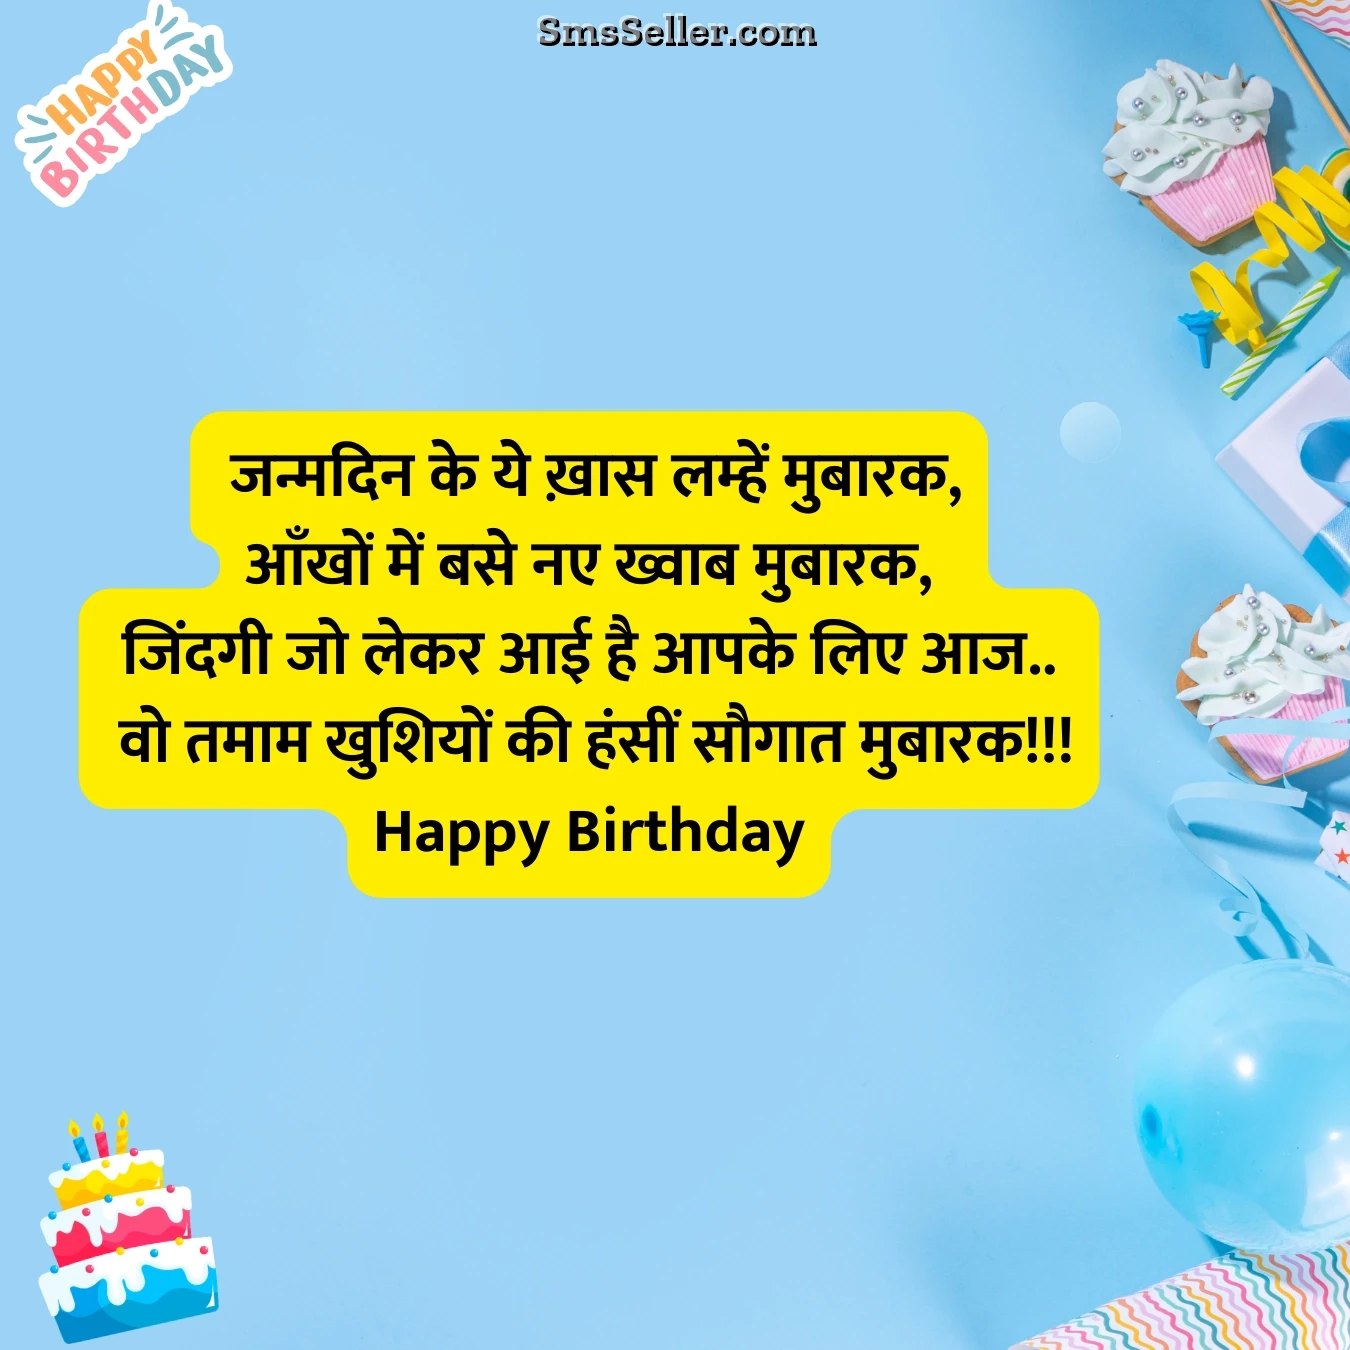 birthday wishes special khaas lamhe mubaarak